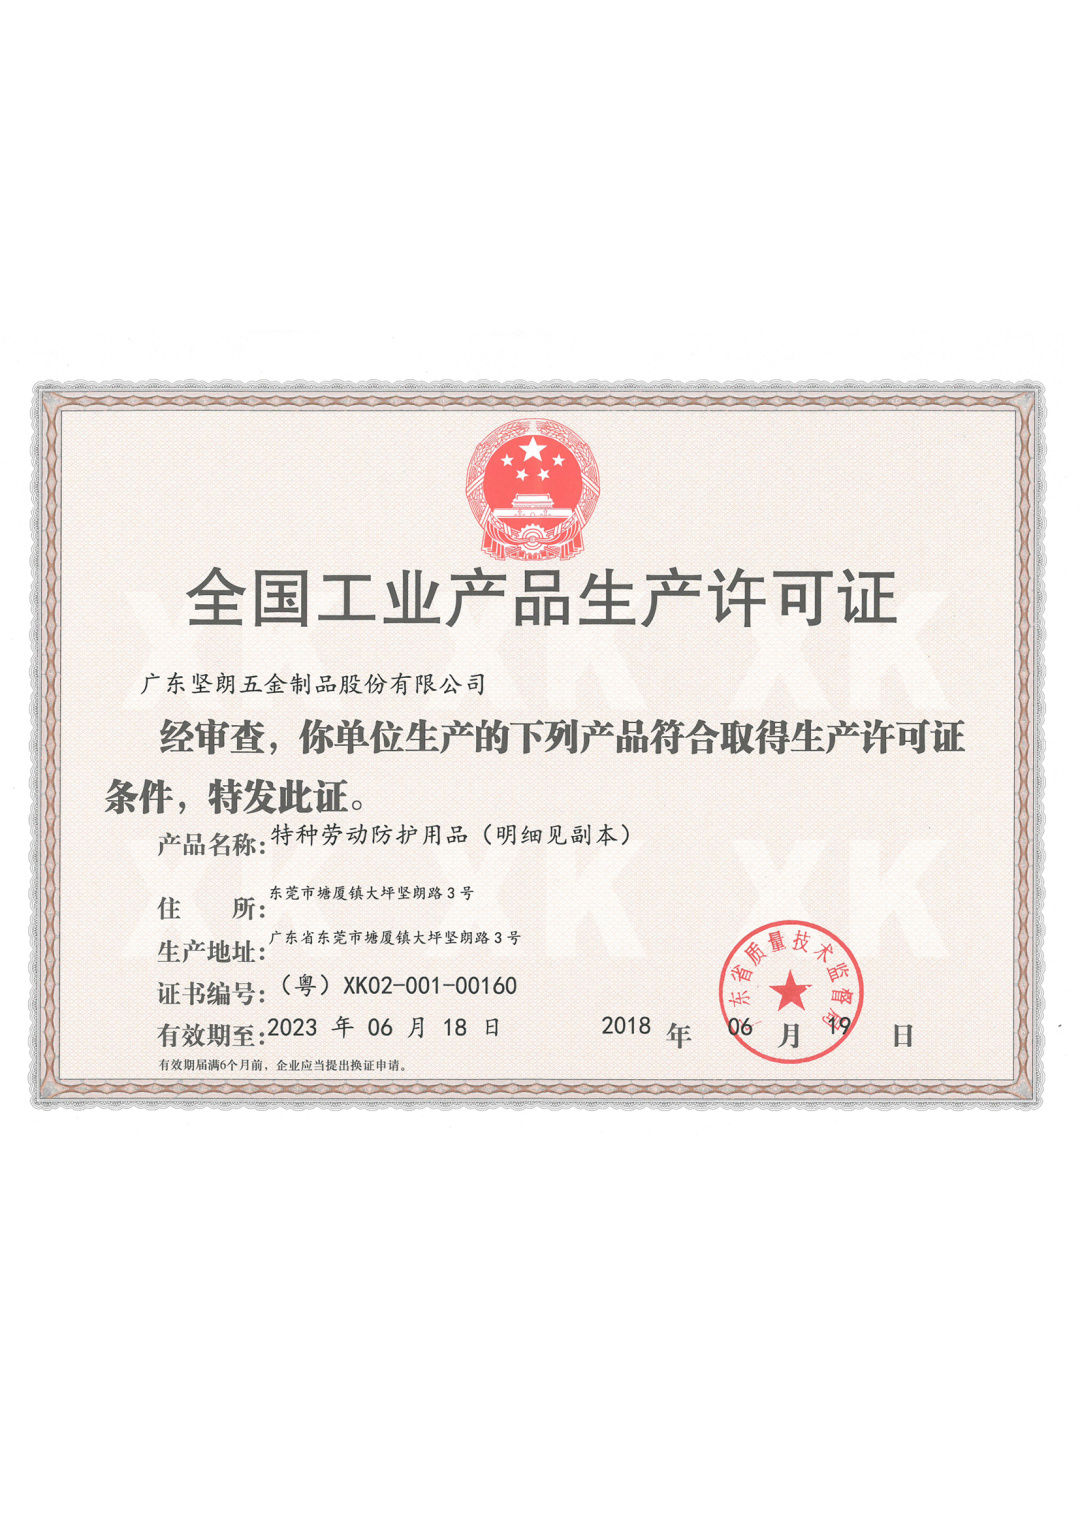 子公司广东特灵安全设备有限公司,是广东省东莞市一家拥有生产许可证